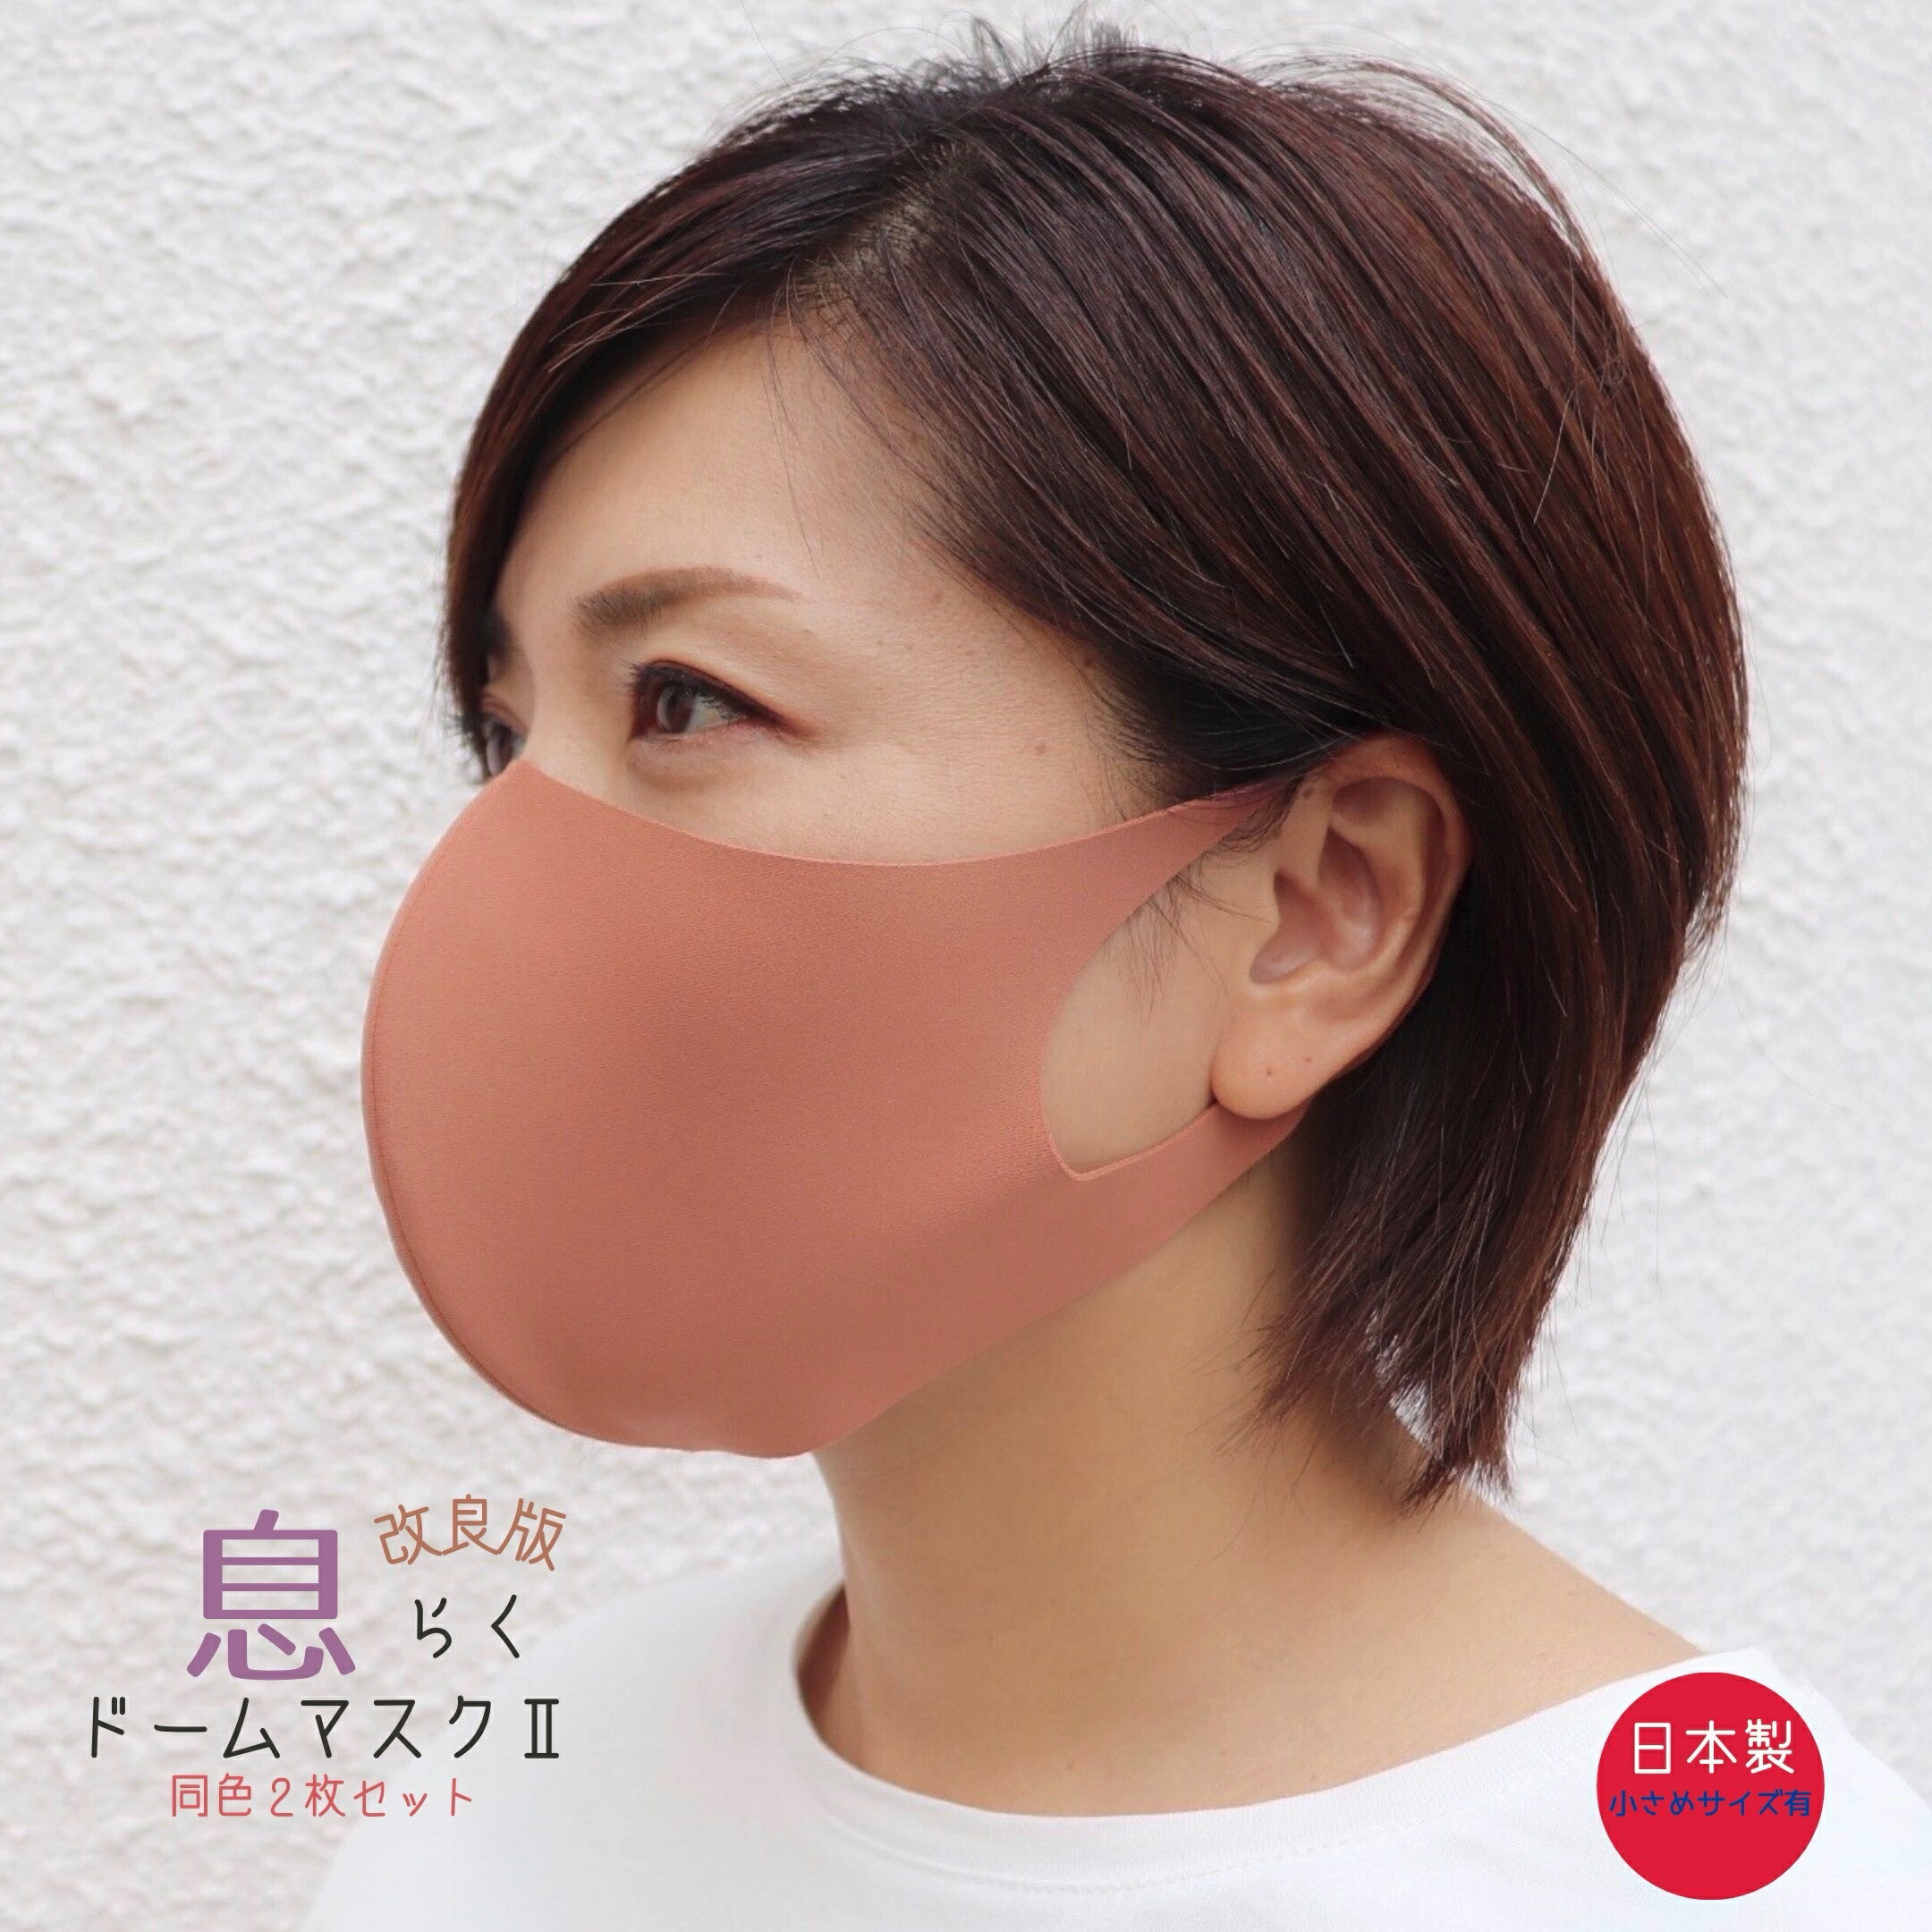 息らくドームマスク2 日本製 ワイヤ